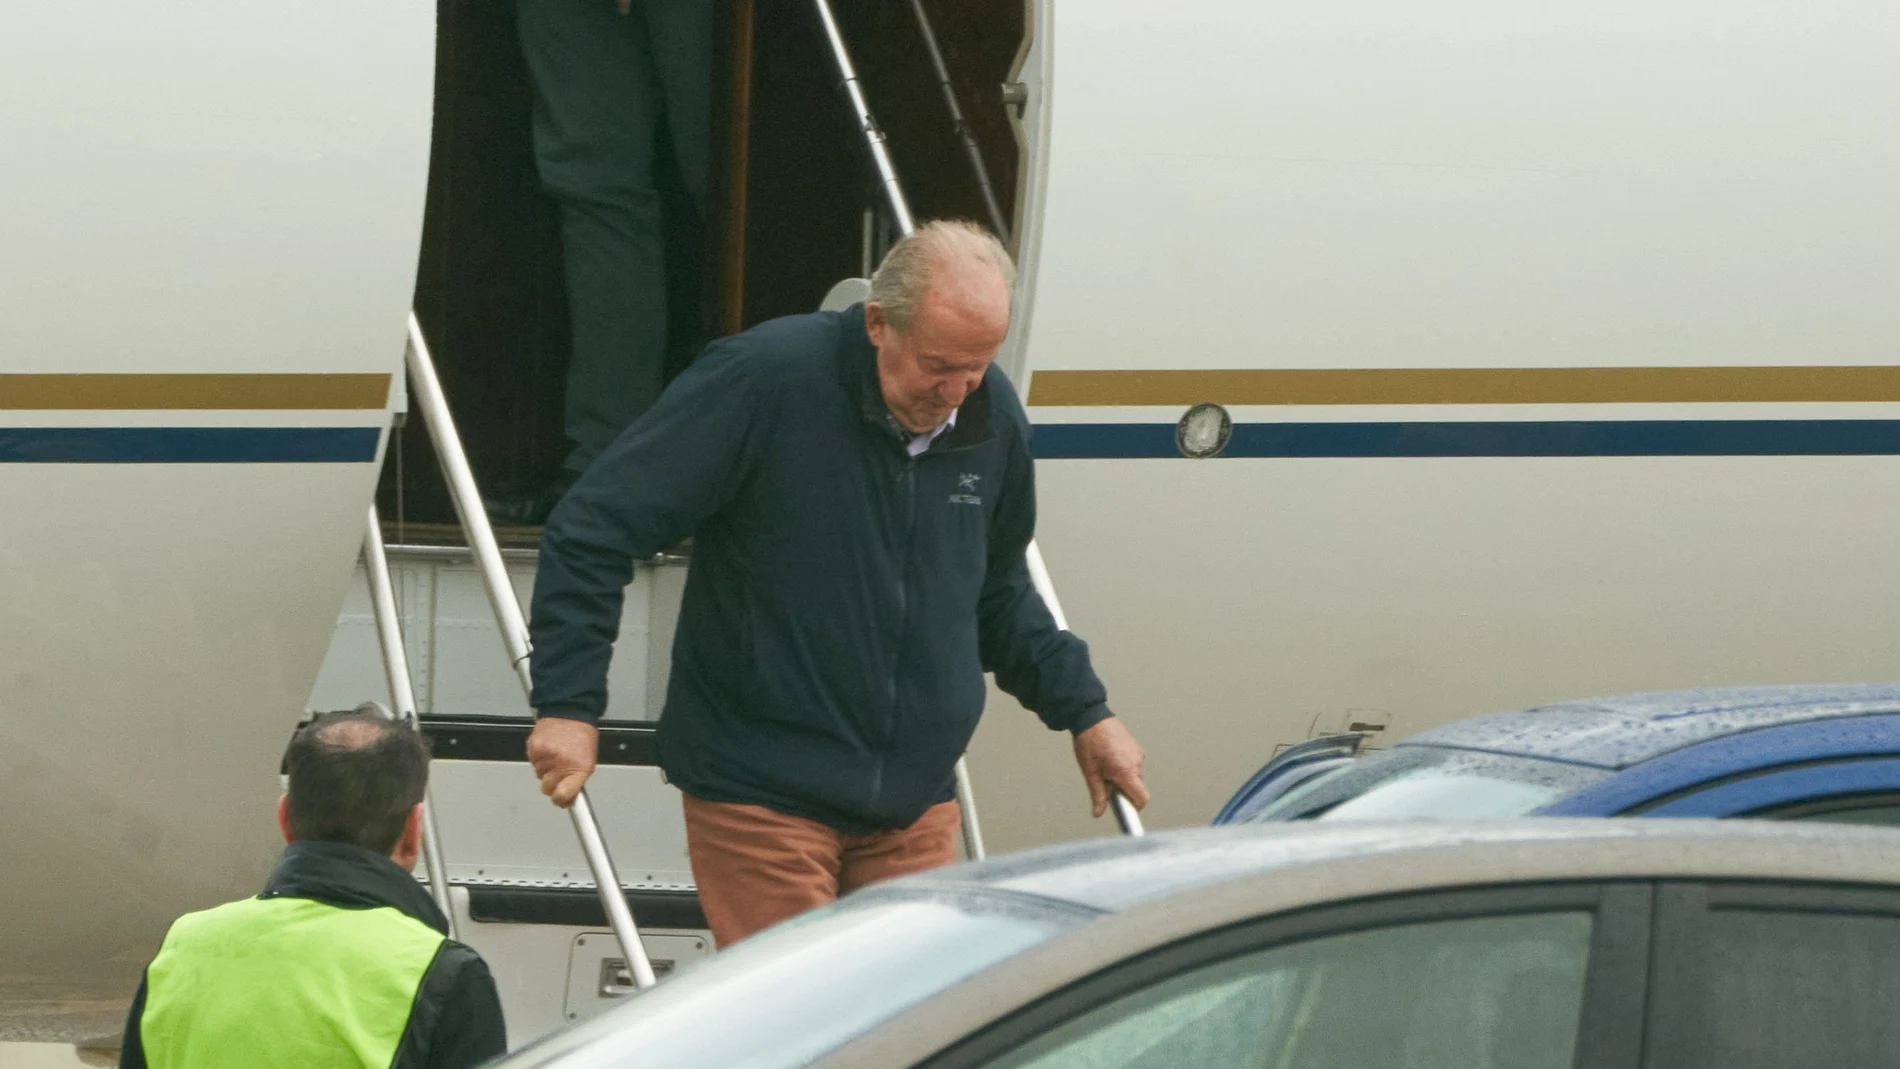  El rey emérito Juan Carlos I, desciende de un avión en el aeropuerto de Vitoria